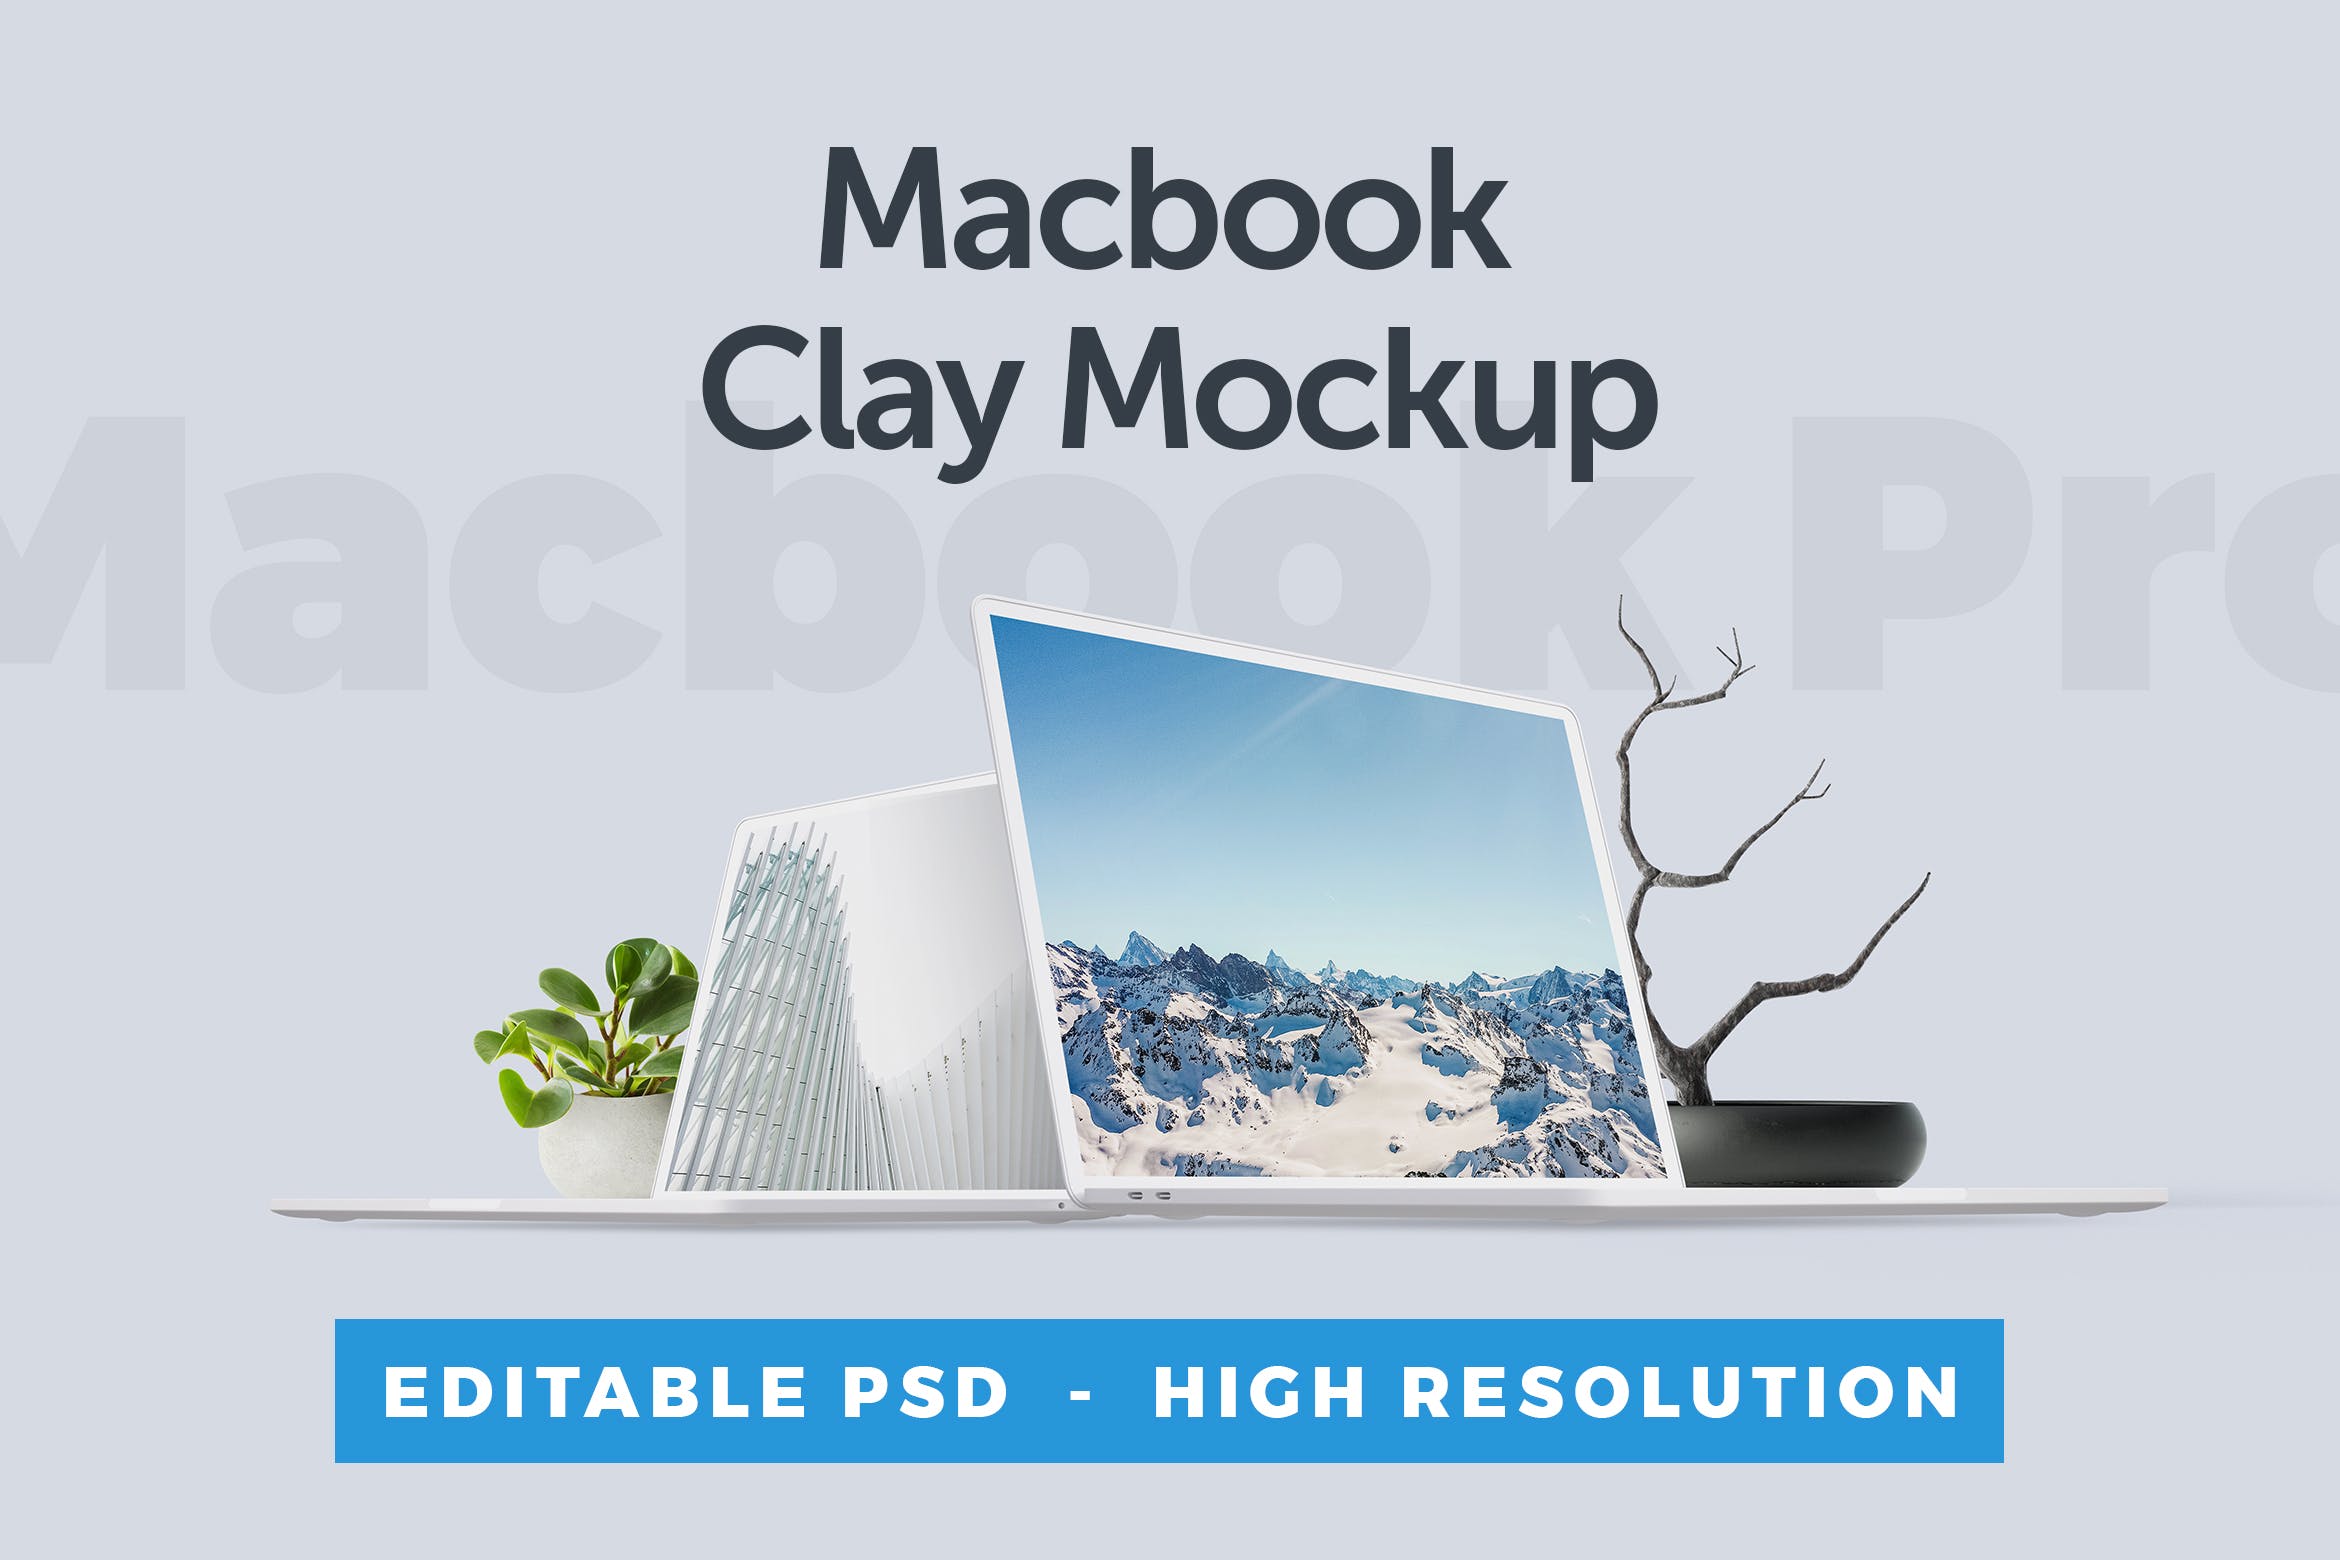 MacBook笔记本电脑屏幕演示蚂蚁素材精选样机 Macbook Clay Mockup插图